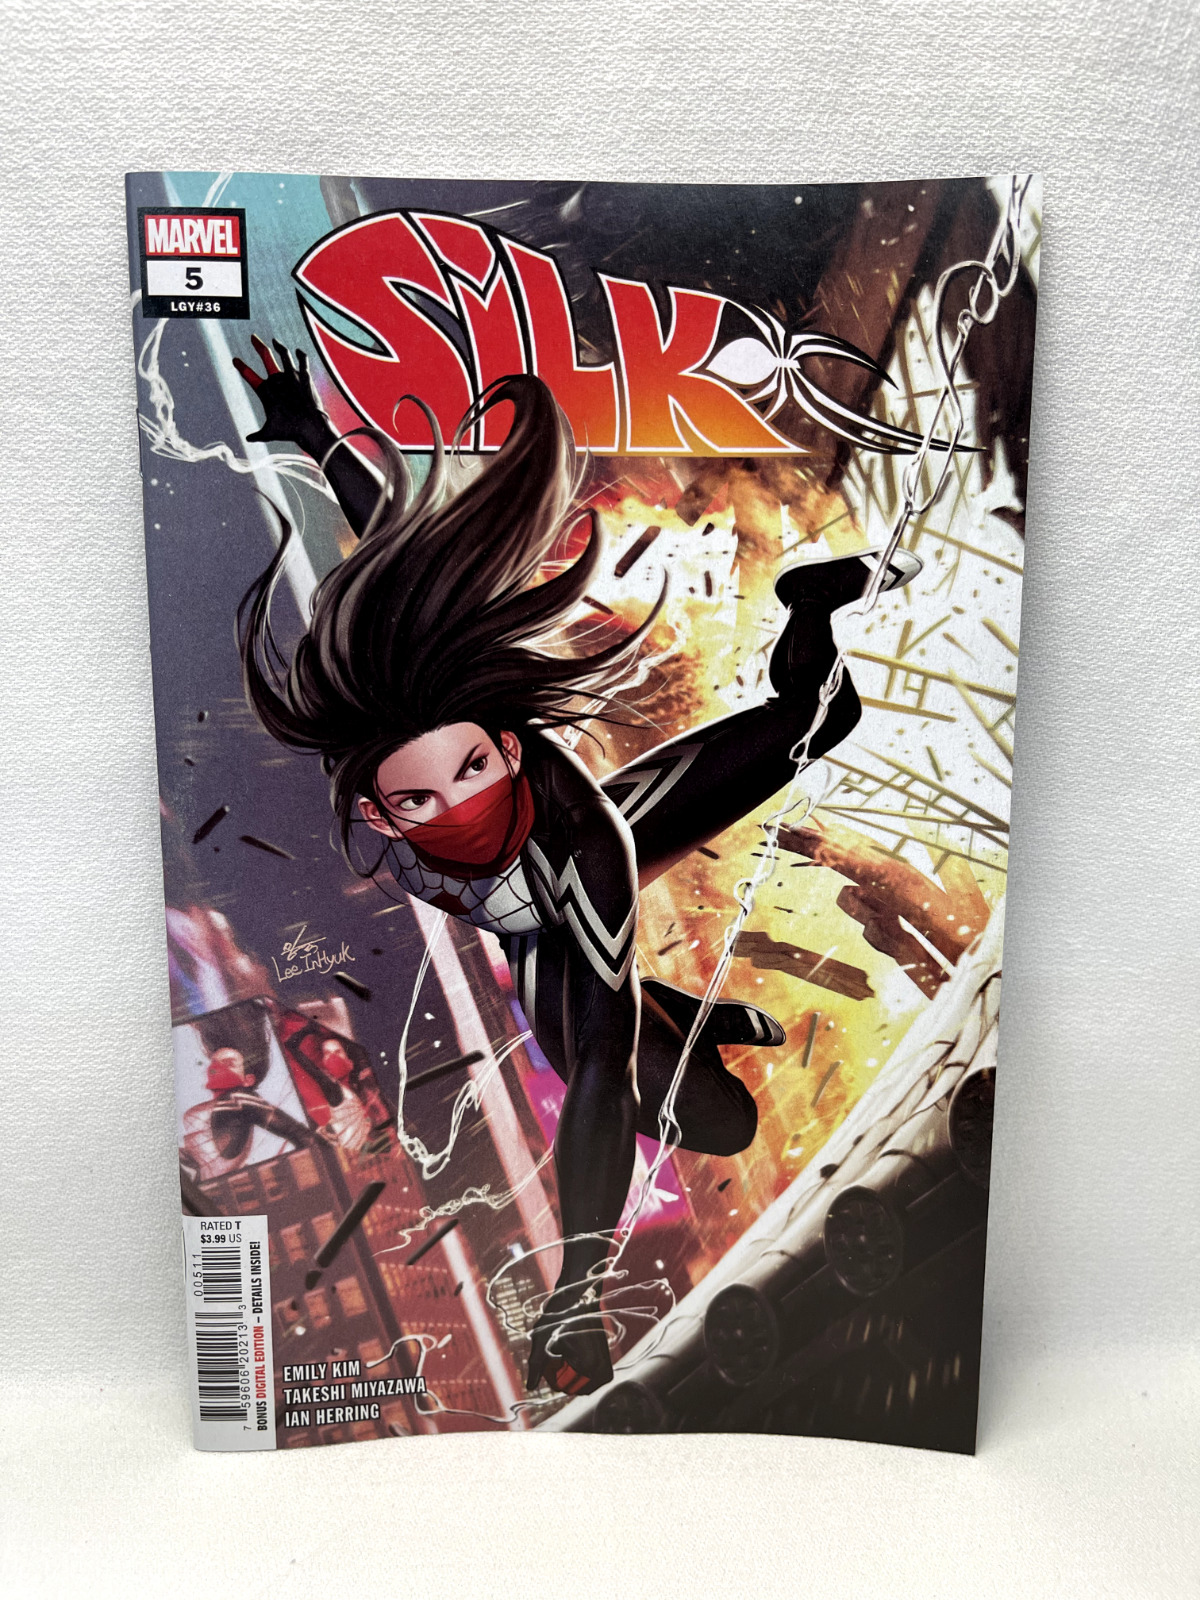 Marvel Silk #5 (2022) by (W) Emily Kim (A) Takeshi Miyazawa (CA) Inhyuk Lee